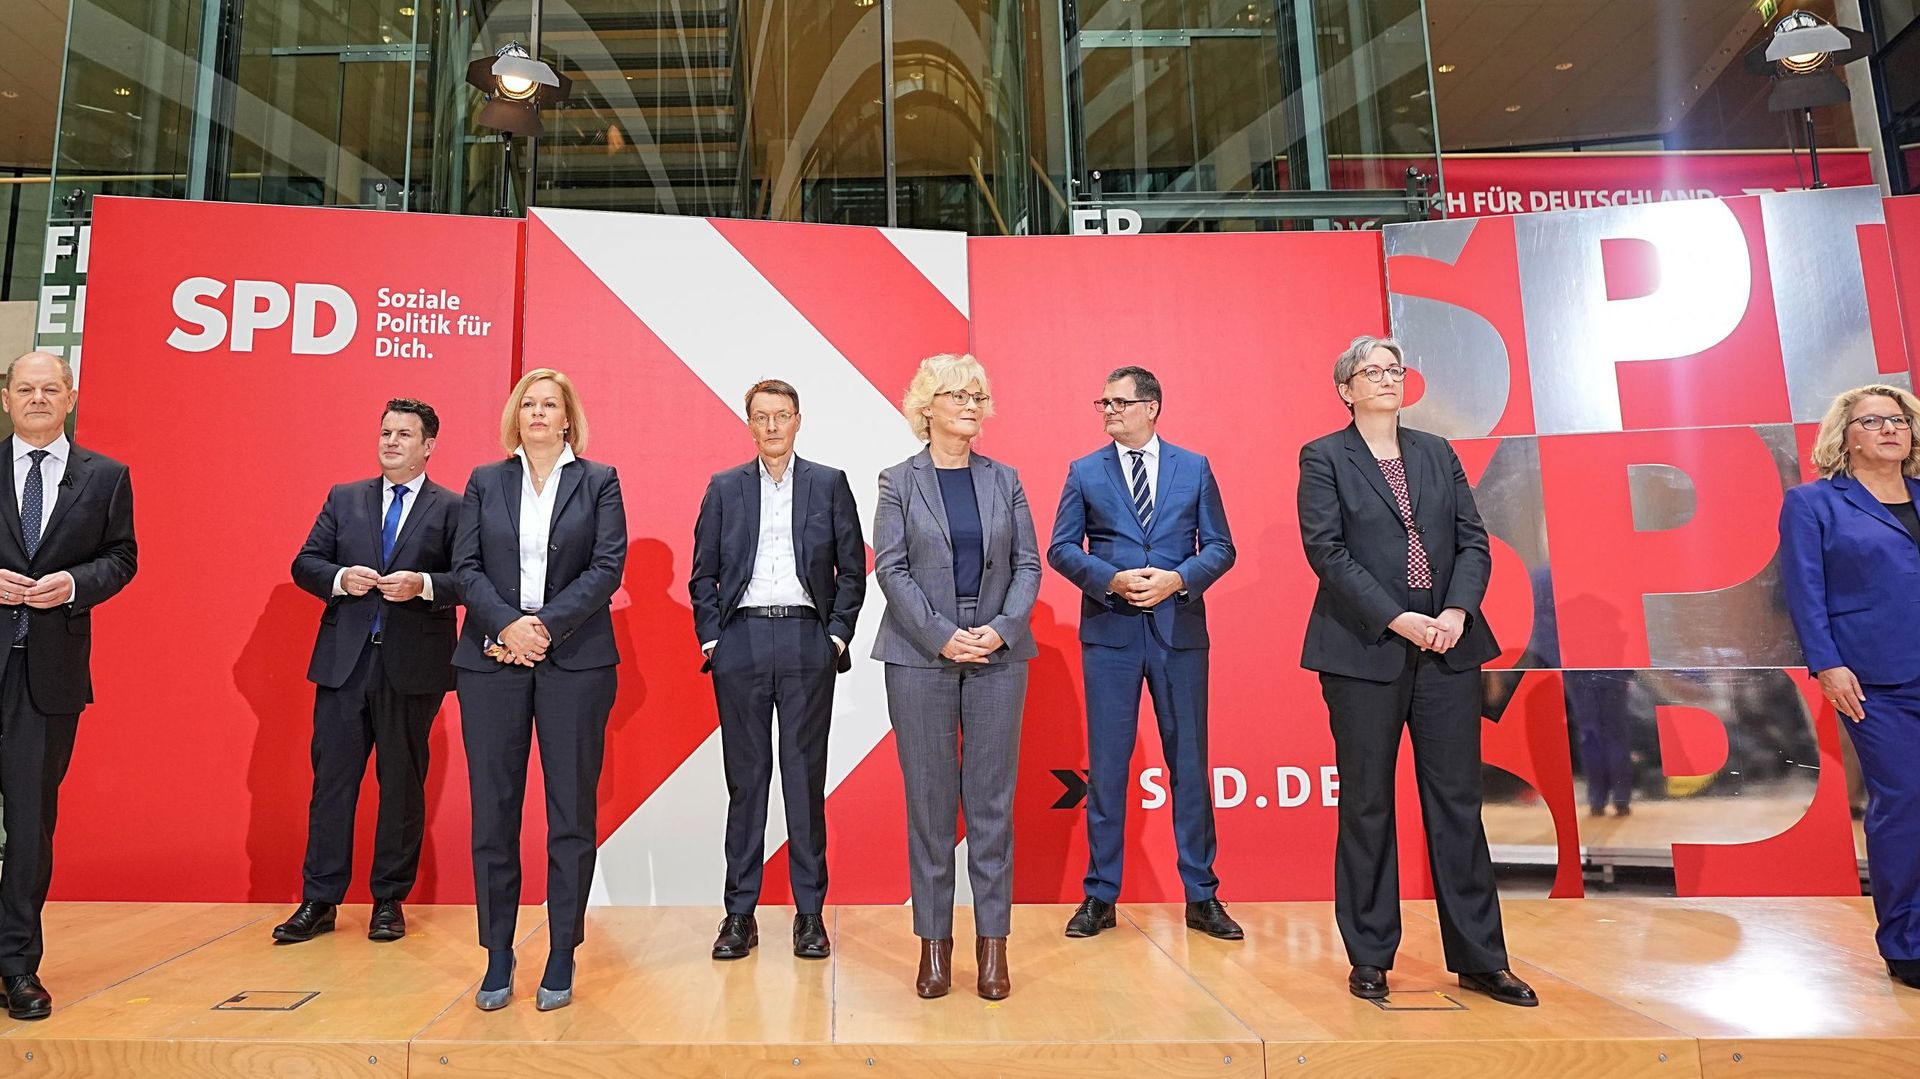 Présentation des ministres SPD